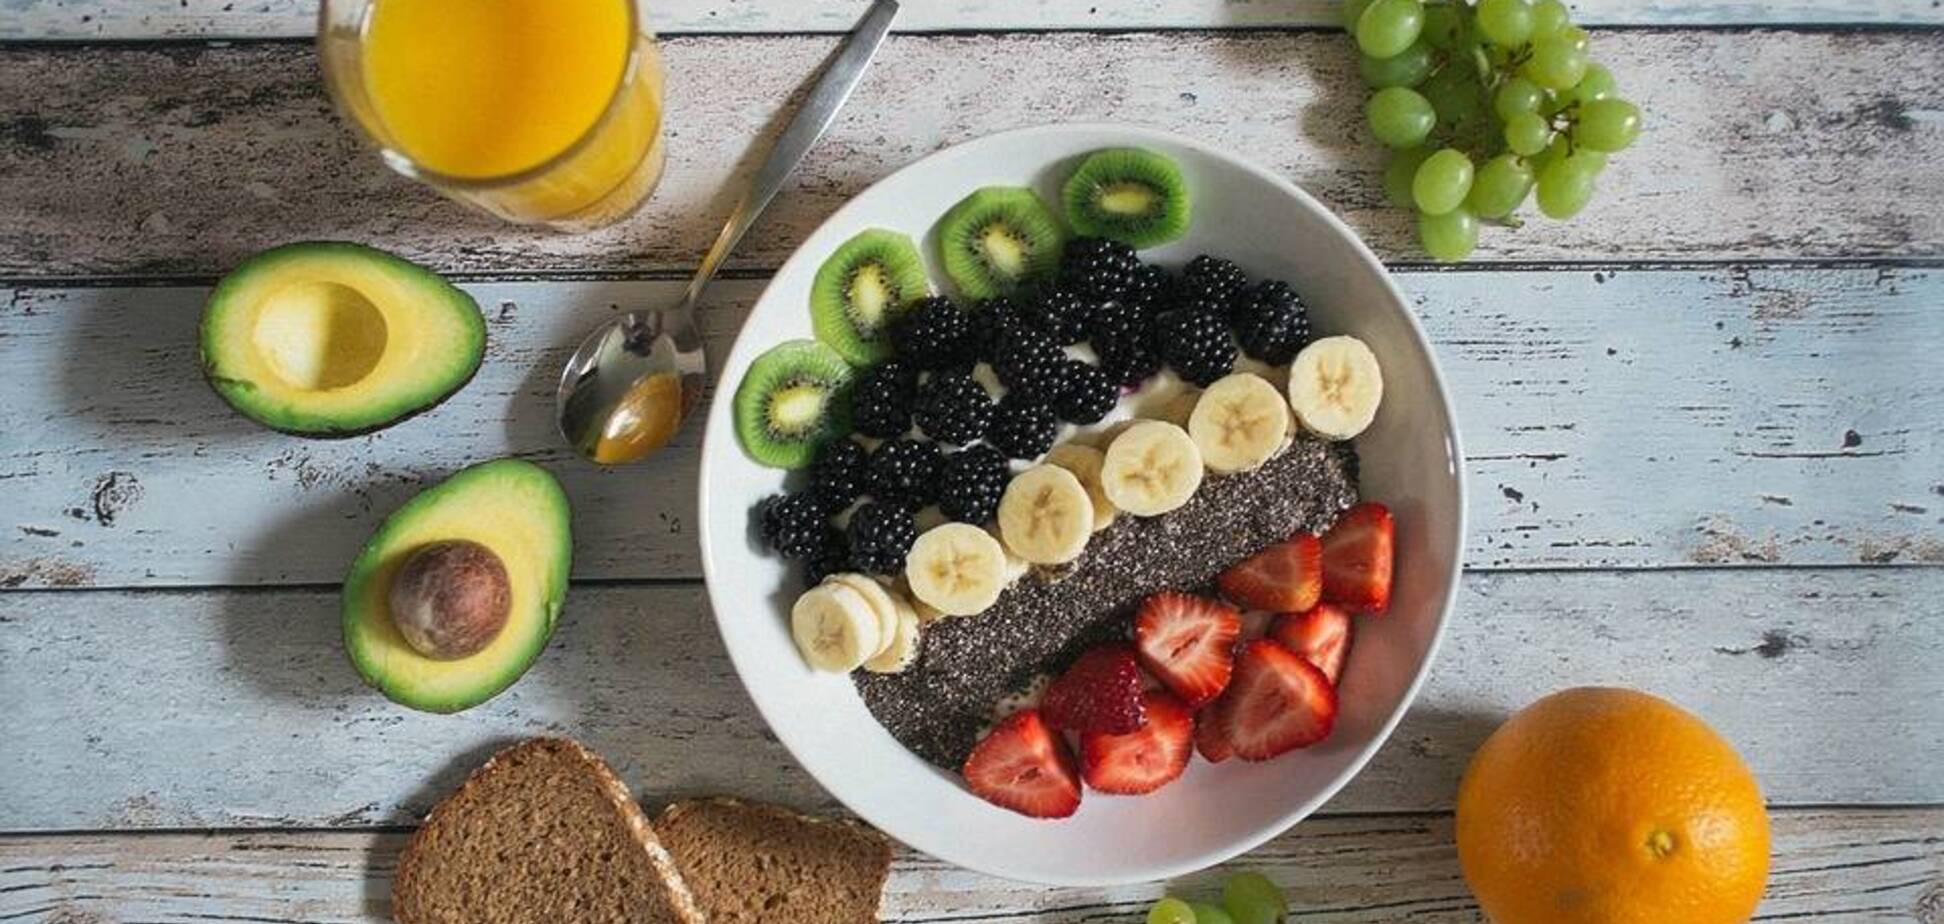 Додаткова порція фруктів або овочів в день може знизити ризик розвитку діабету